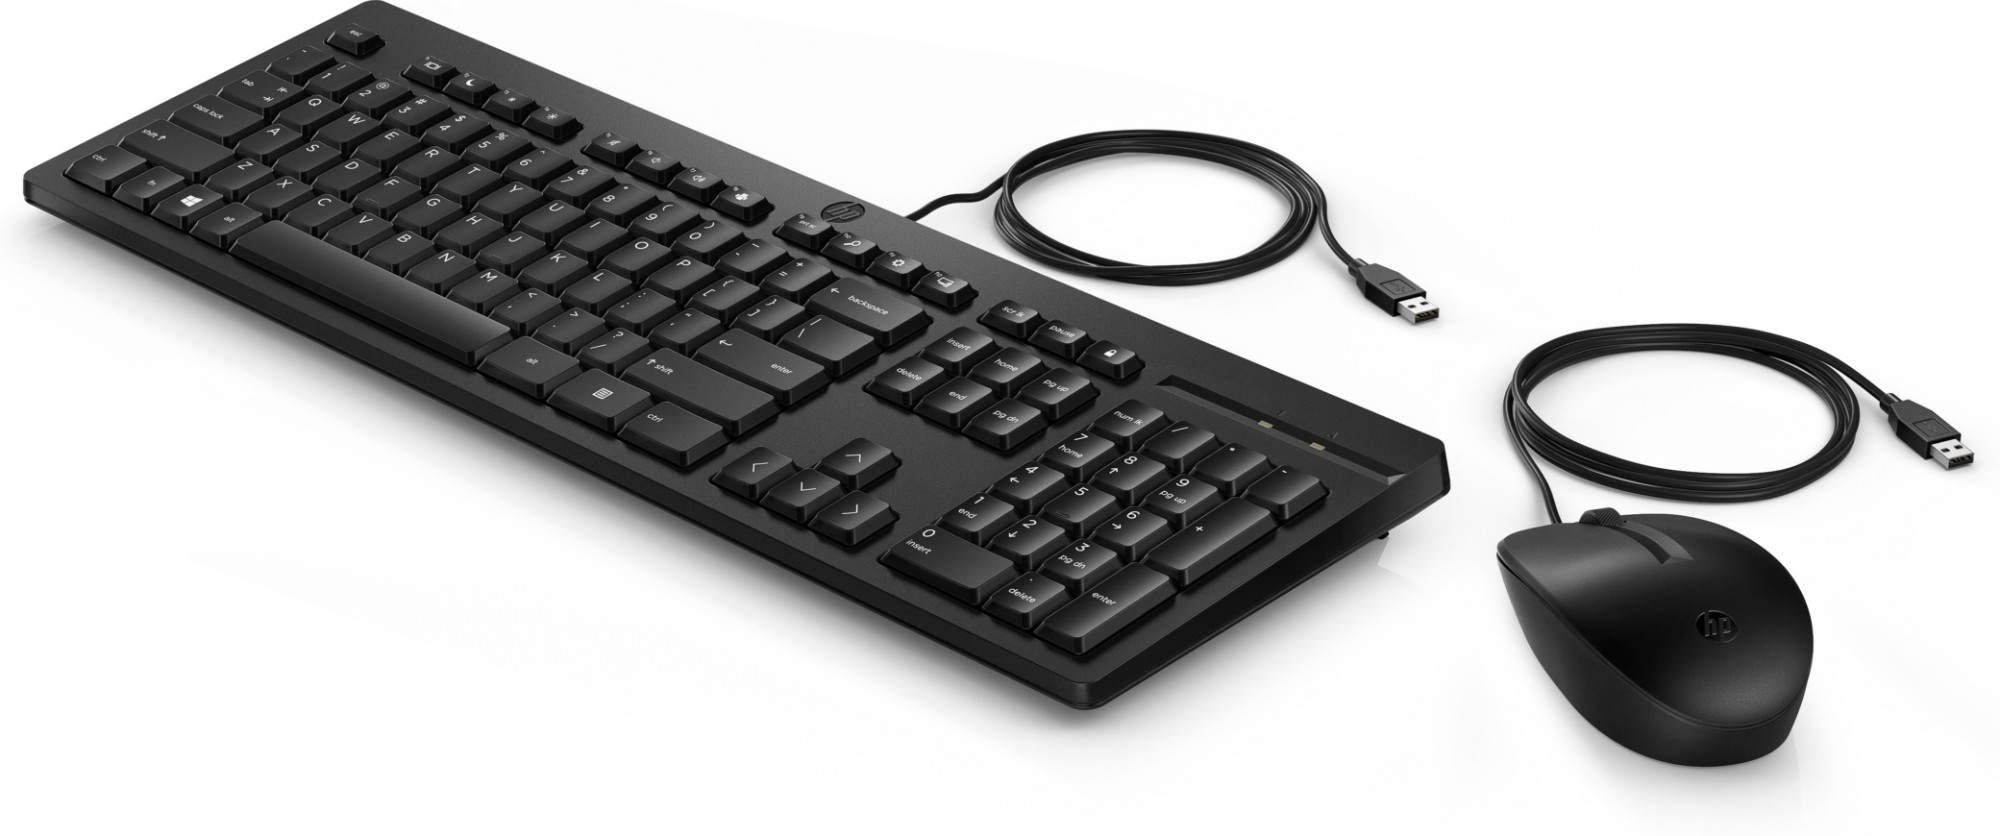 HP 225 trådad mus- och tangentbordskombination